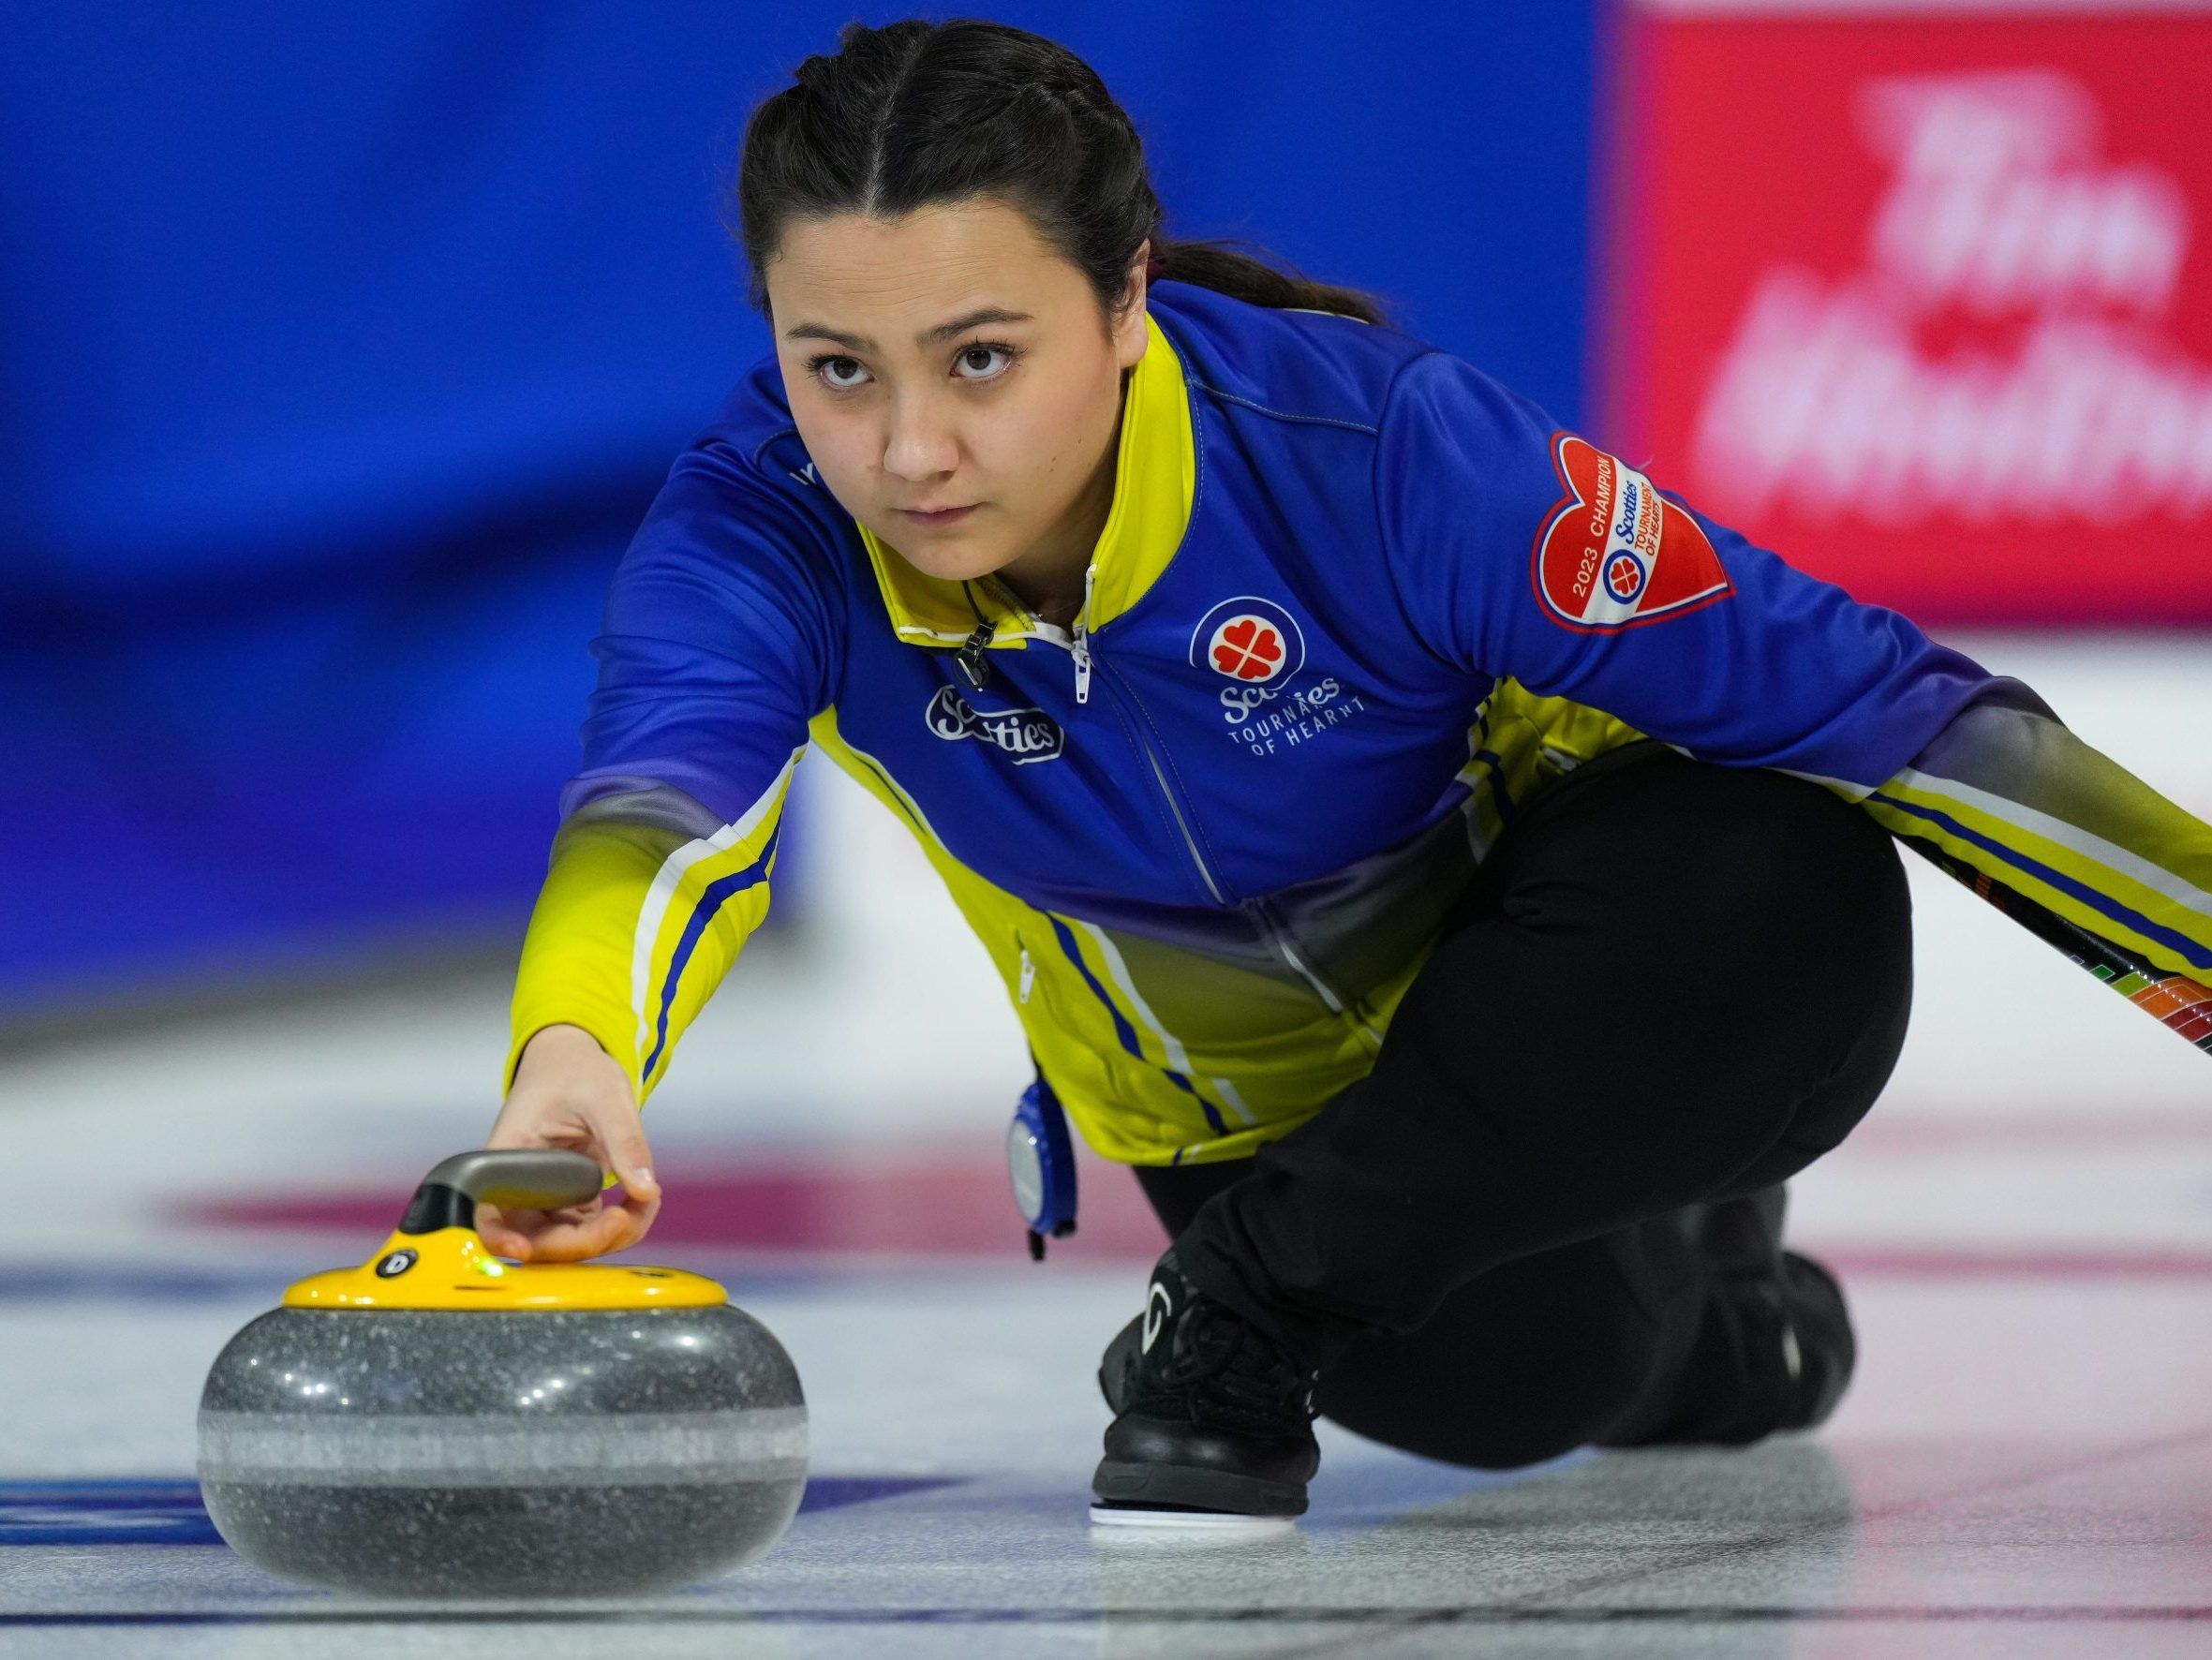 Team Skrlik heads to Alberta Scotties with repeat curling hopes in